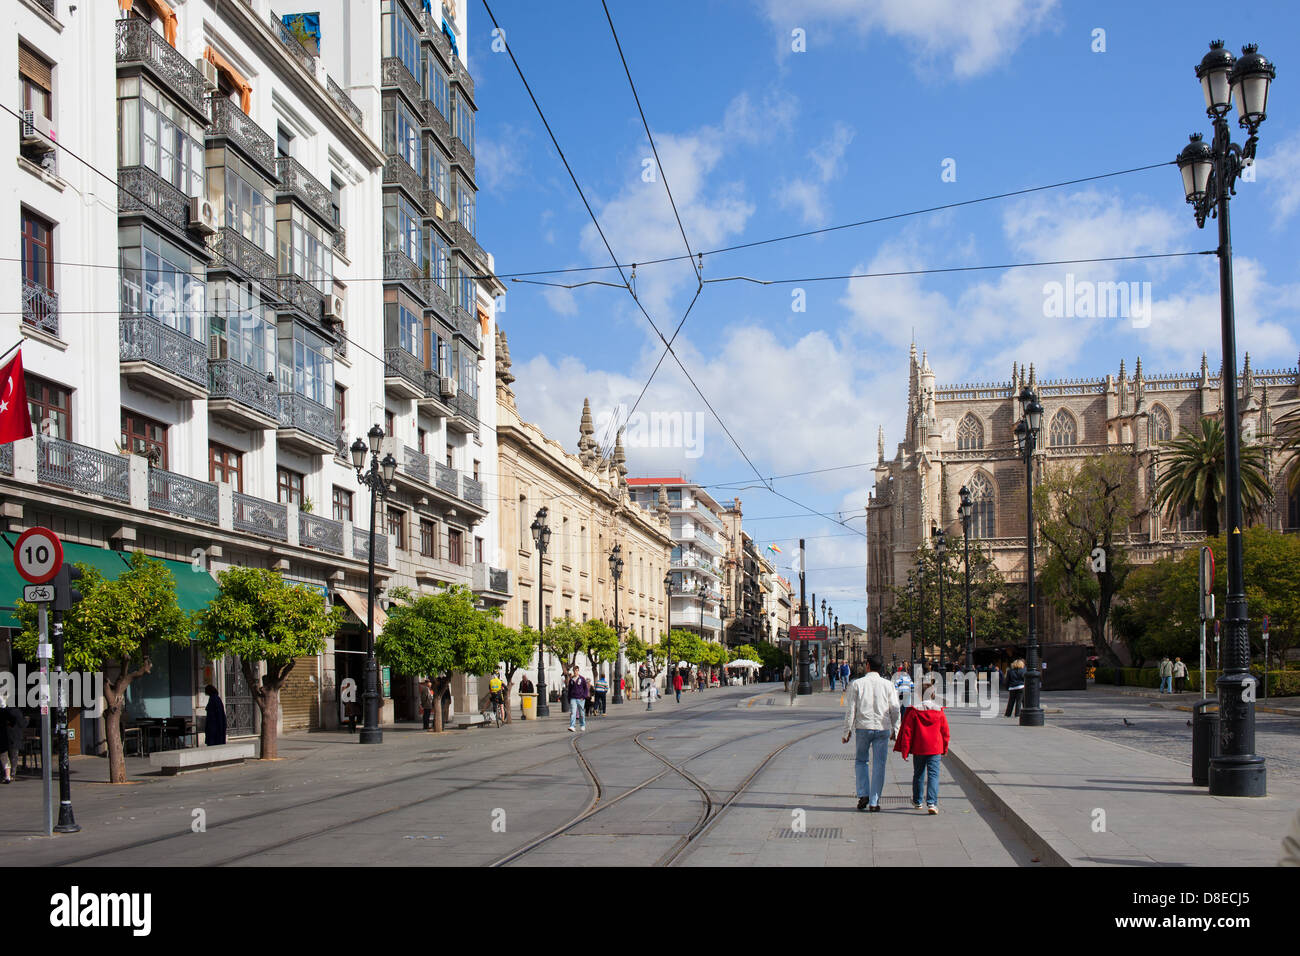 La avenida Constitución, calle peatonal con la vía del tranvía, paisaje urbano en el centro de la ciudad de Sevilla, España. Foto de stock